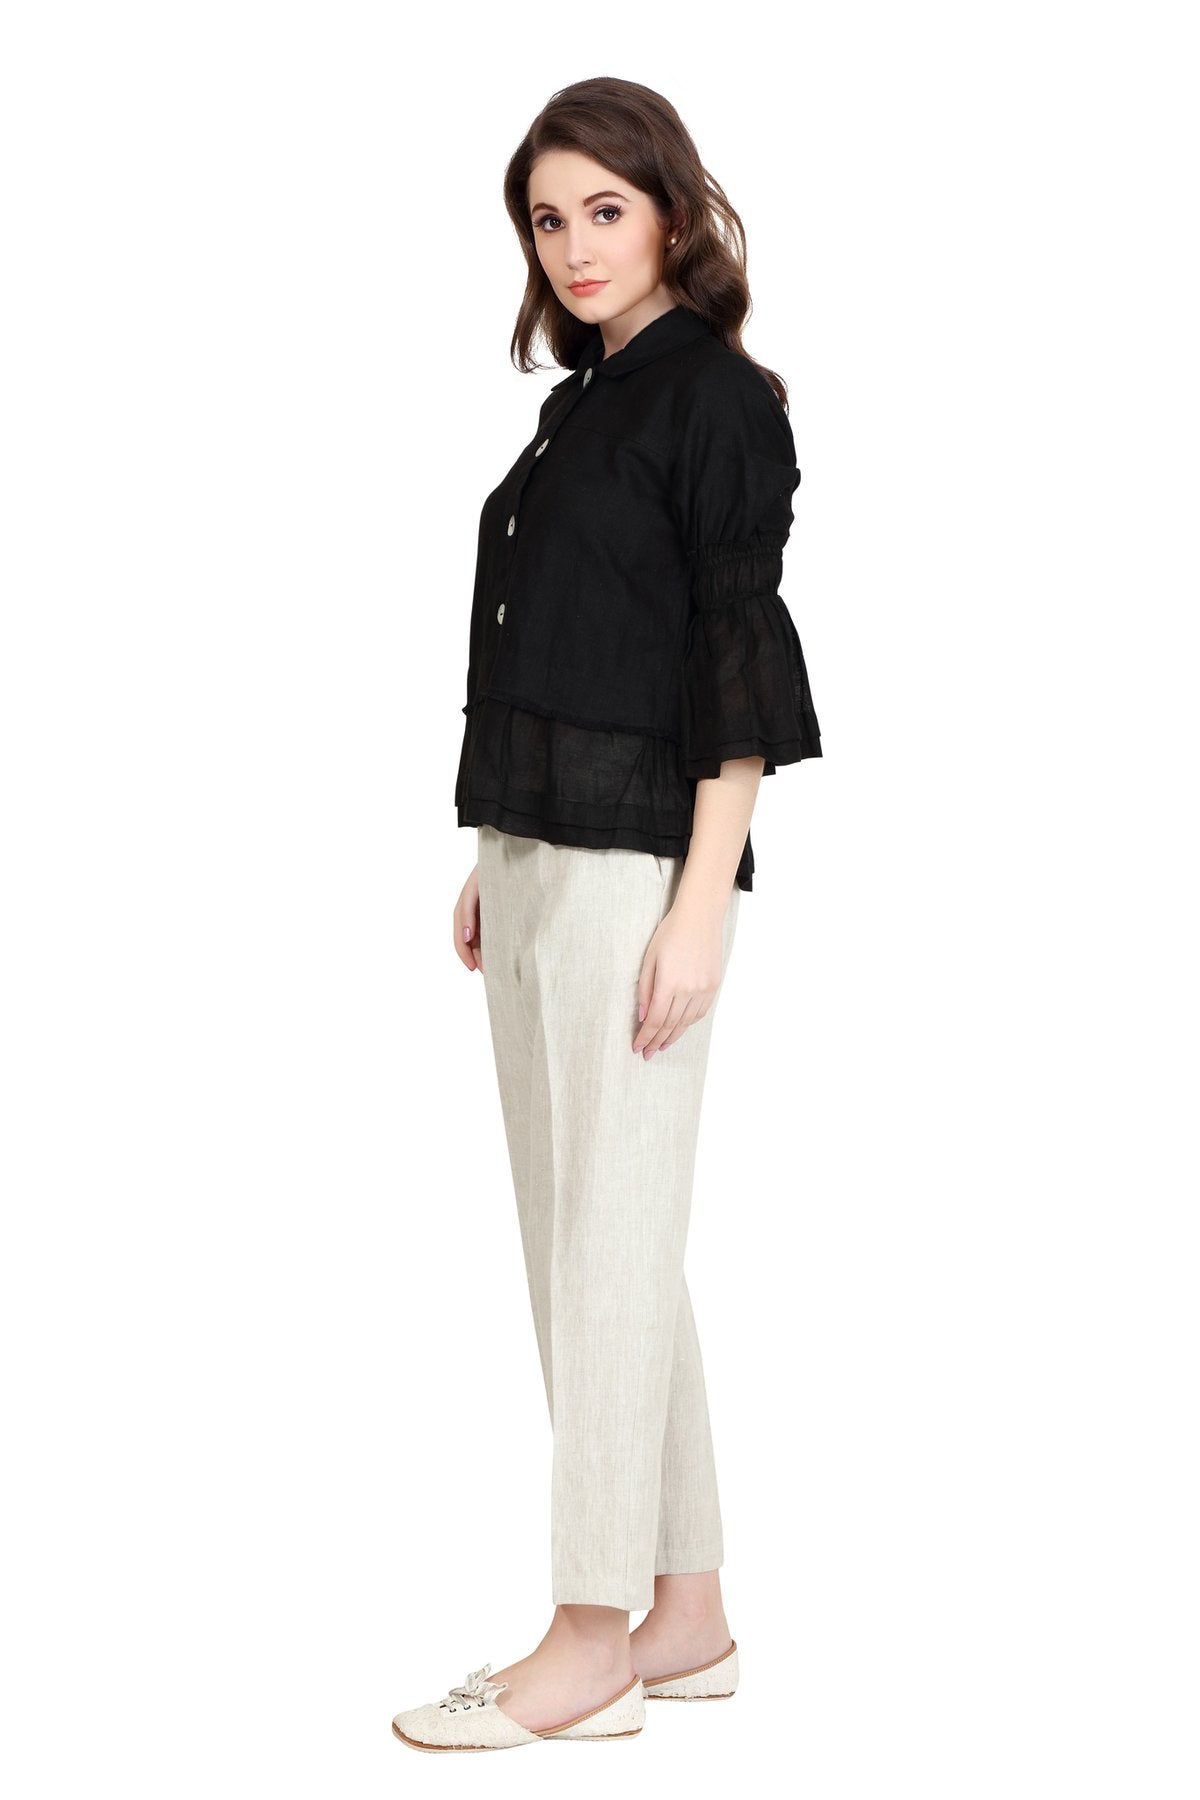 Linen and Linens - Ruffled Linen Shirt - Black - 2